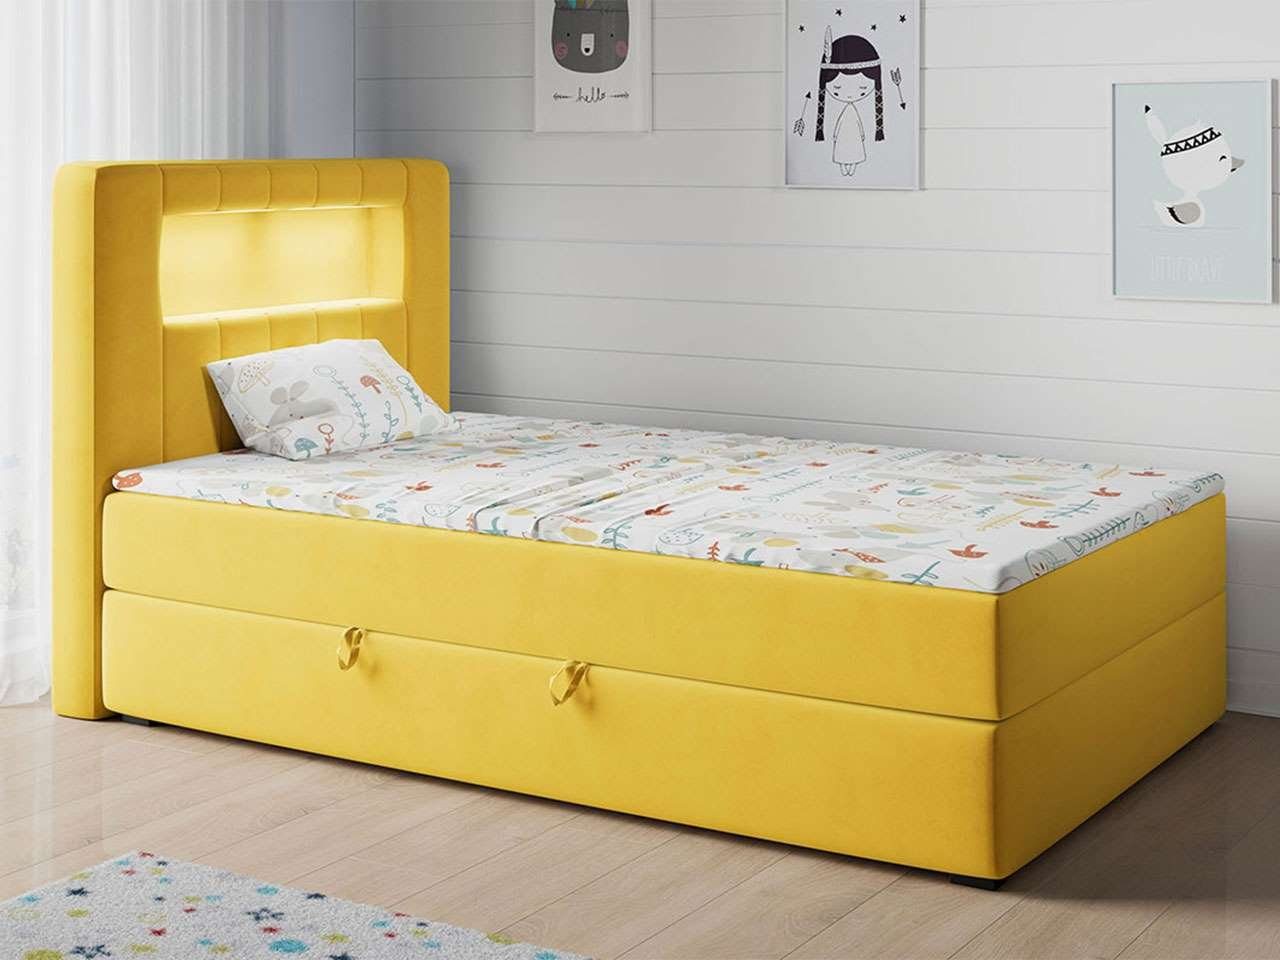 MKS MÖBEL Kinderbett GOLD 1 JUNIOR, Funktionsbett Bett Boxspringbetten für Kinderzimmer, Einzelbetten Gelb